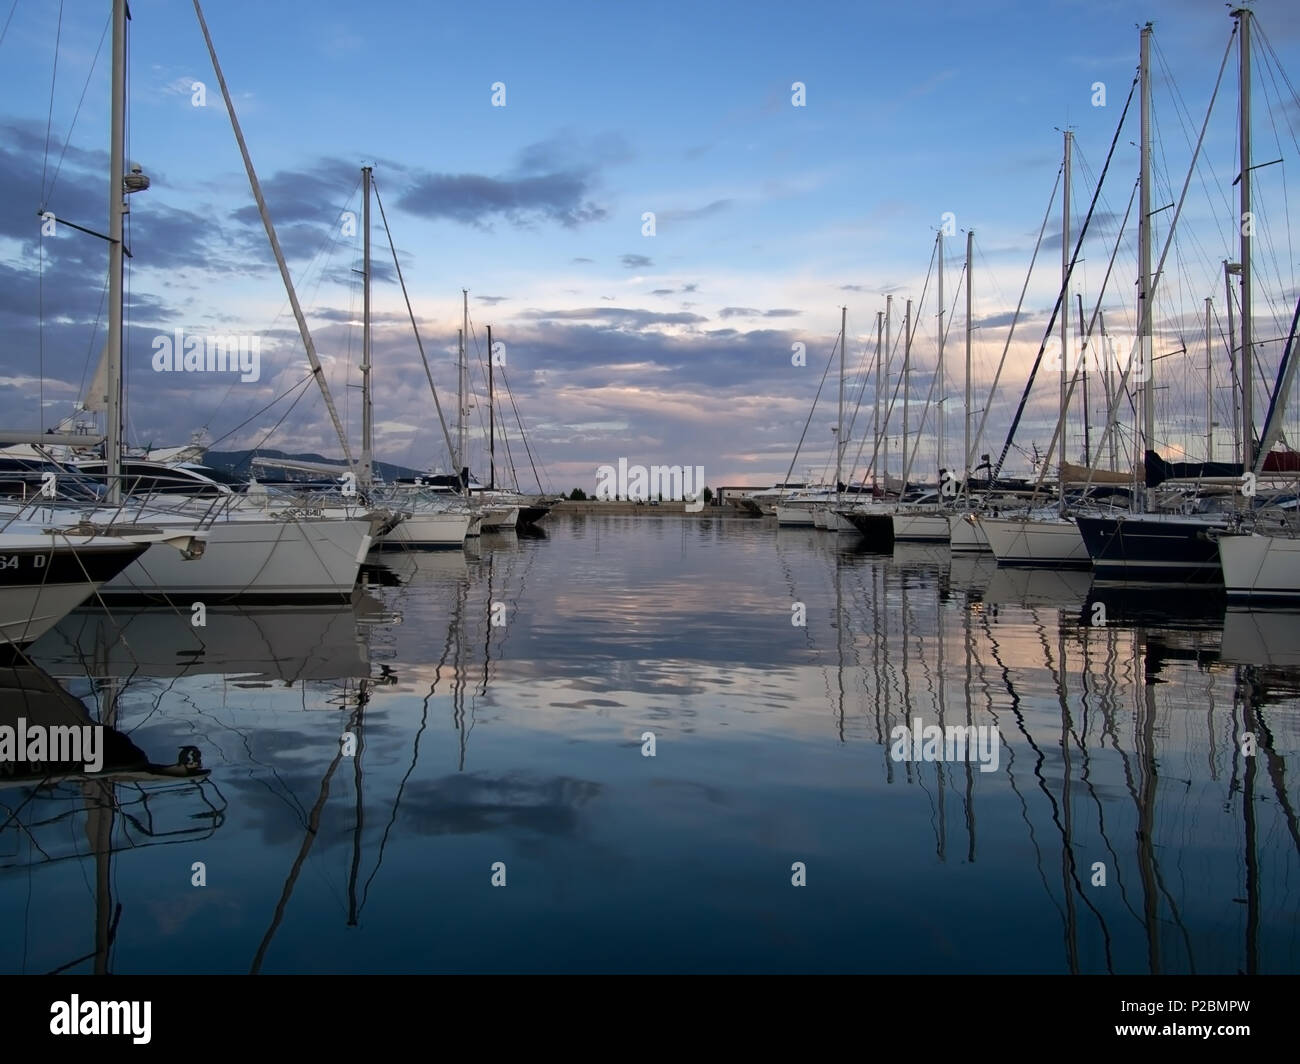 LA SPEZIA, ITALIE - 13 juin 2018 : le soir tombe sur la marina dans la ville de La Spezia, Italie, sur la côte méditerranéenne en Ligurie. Beaucoup de gens riches et célèbres Banque D'Images